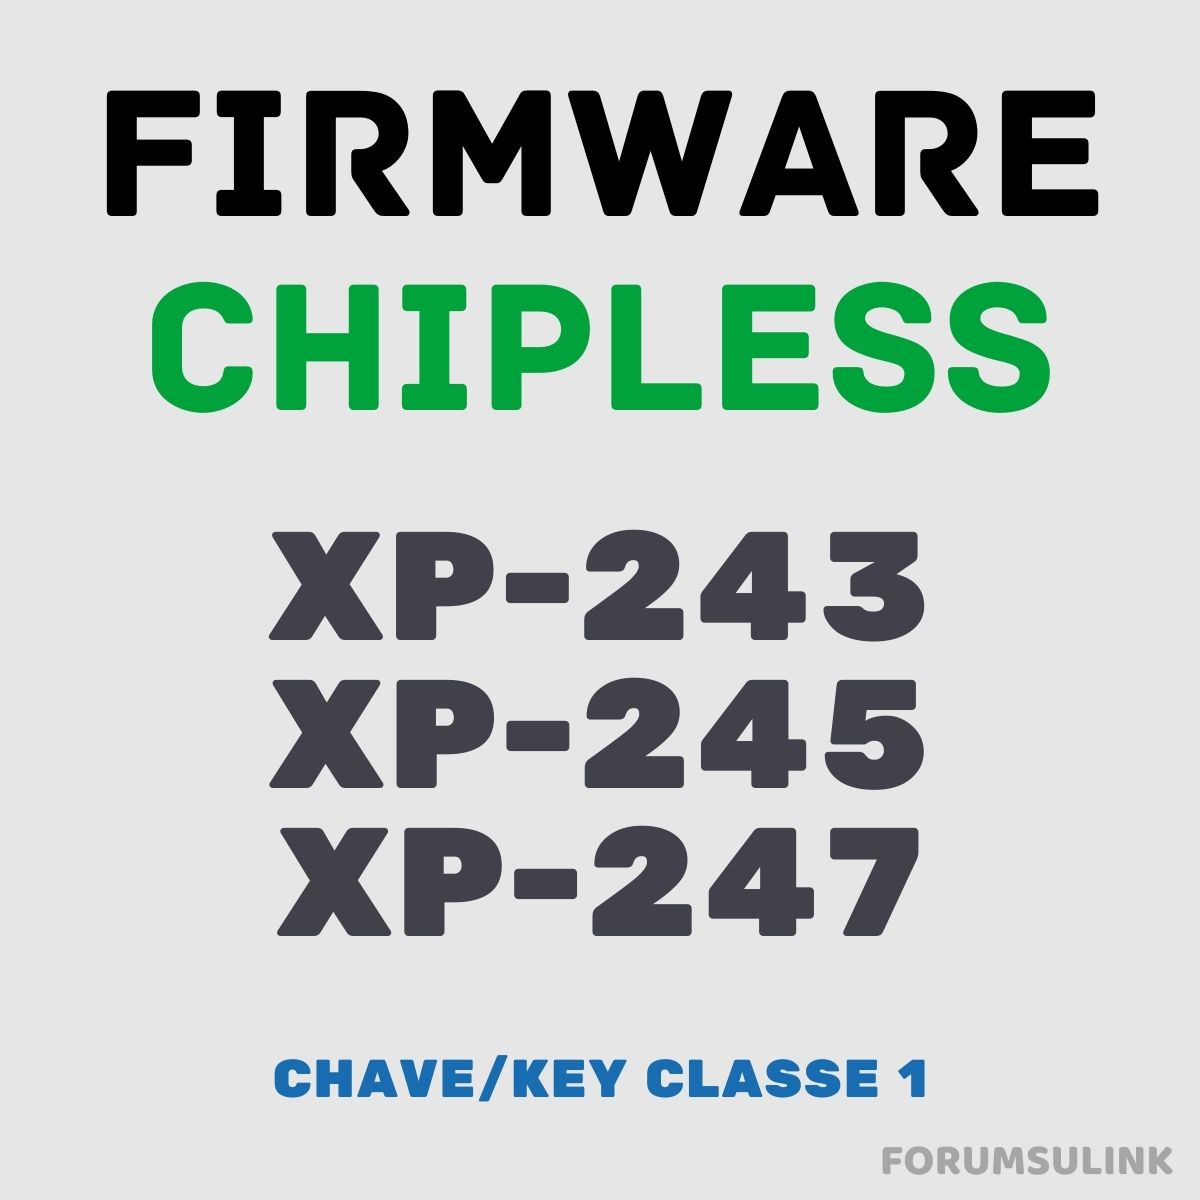 Epson XP-243, XP-245 e XP-247 | Arquivo de Software Firmware ChipLess